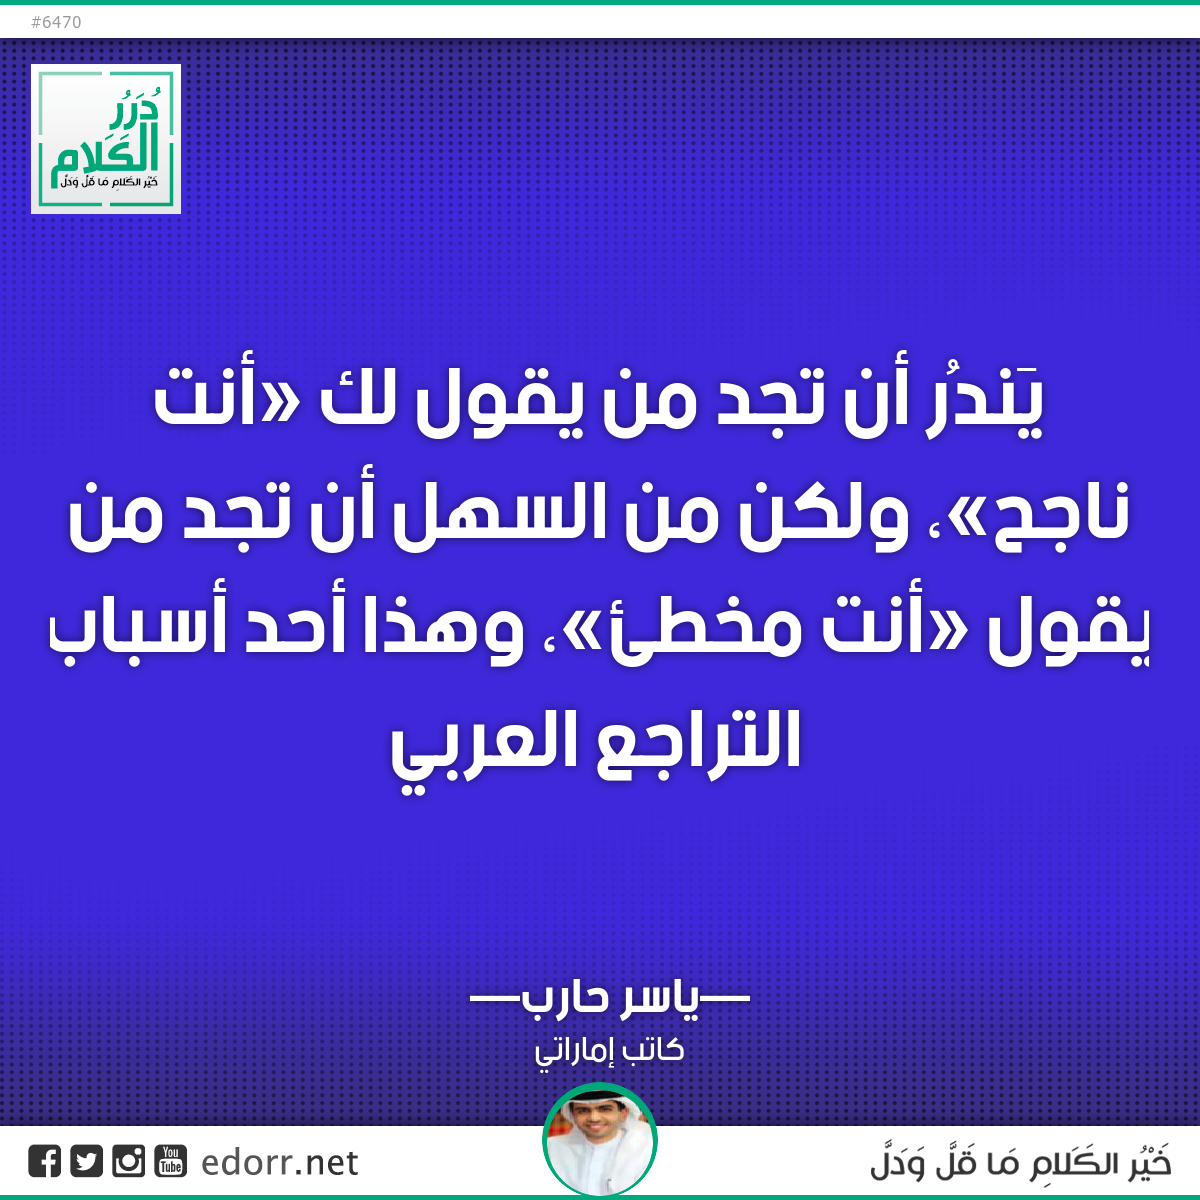 يَندُر أن تجد من يقول لك «أنت ناجح»، ولكن من السهل أن تجد من يقول «أنت مخطئ»، وهذا أحد أسباب التراجع العربي.